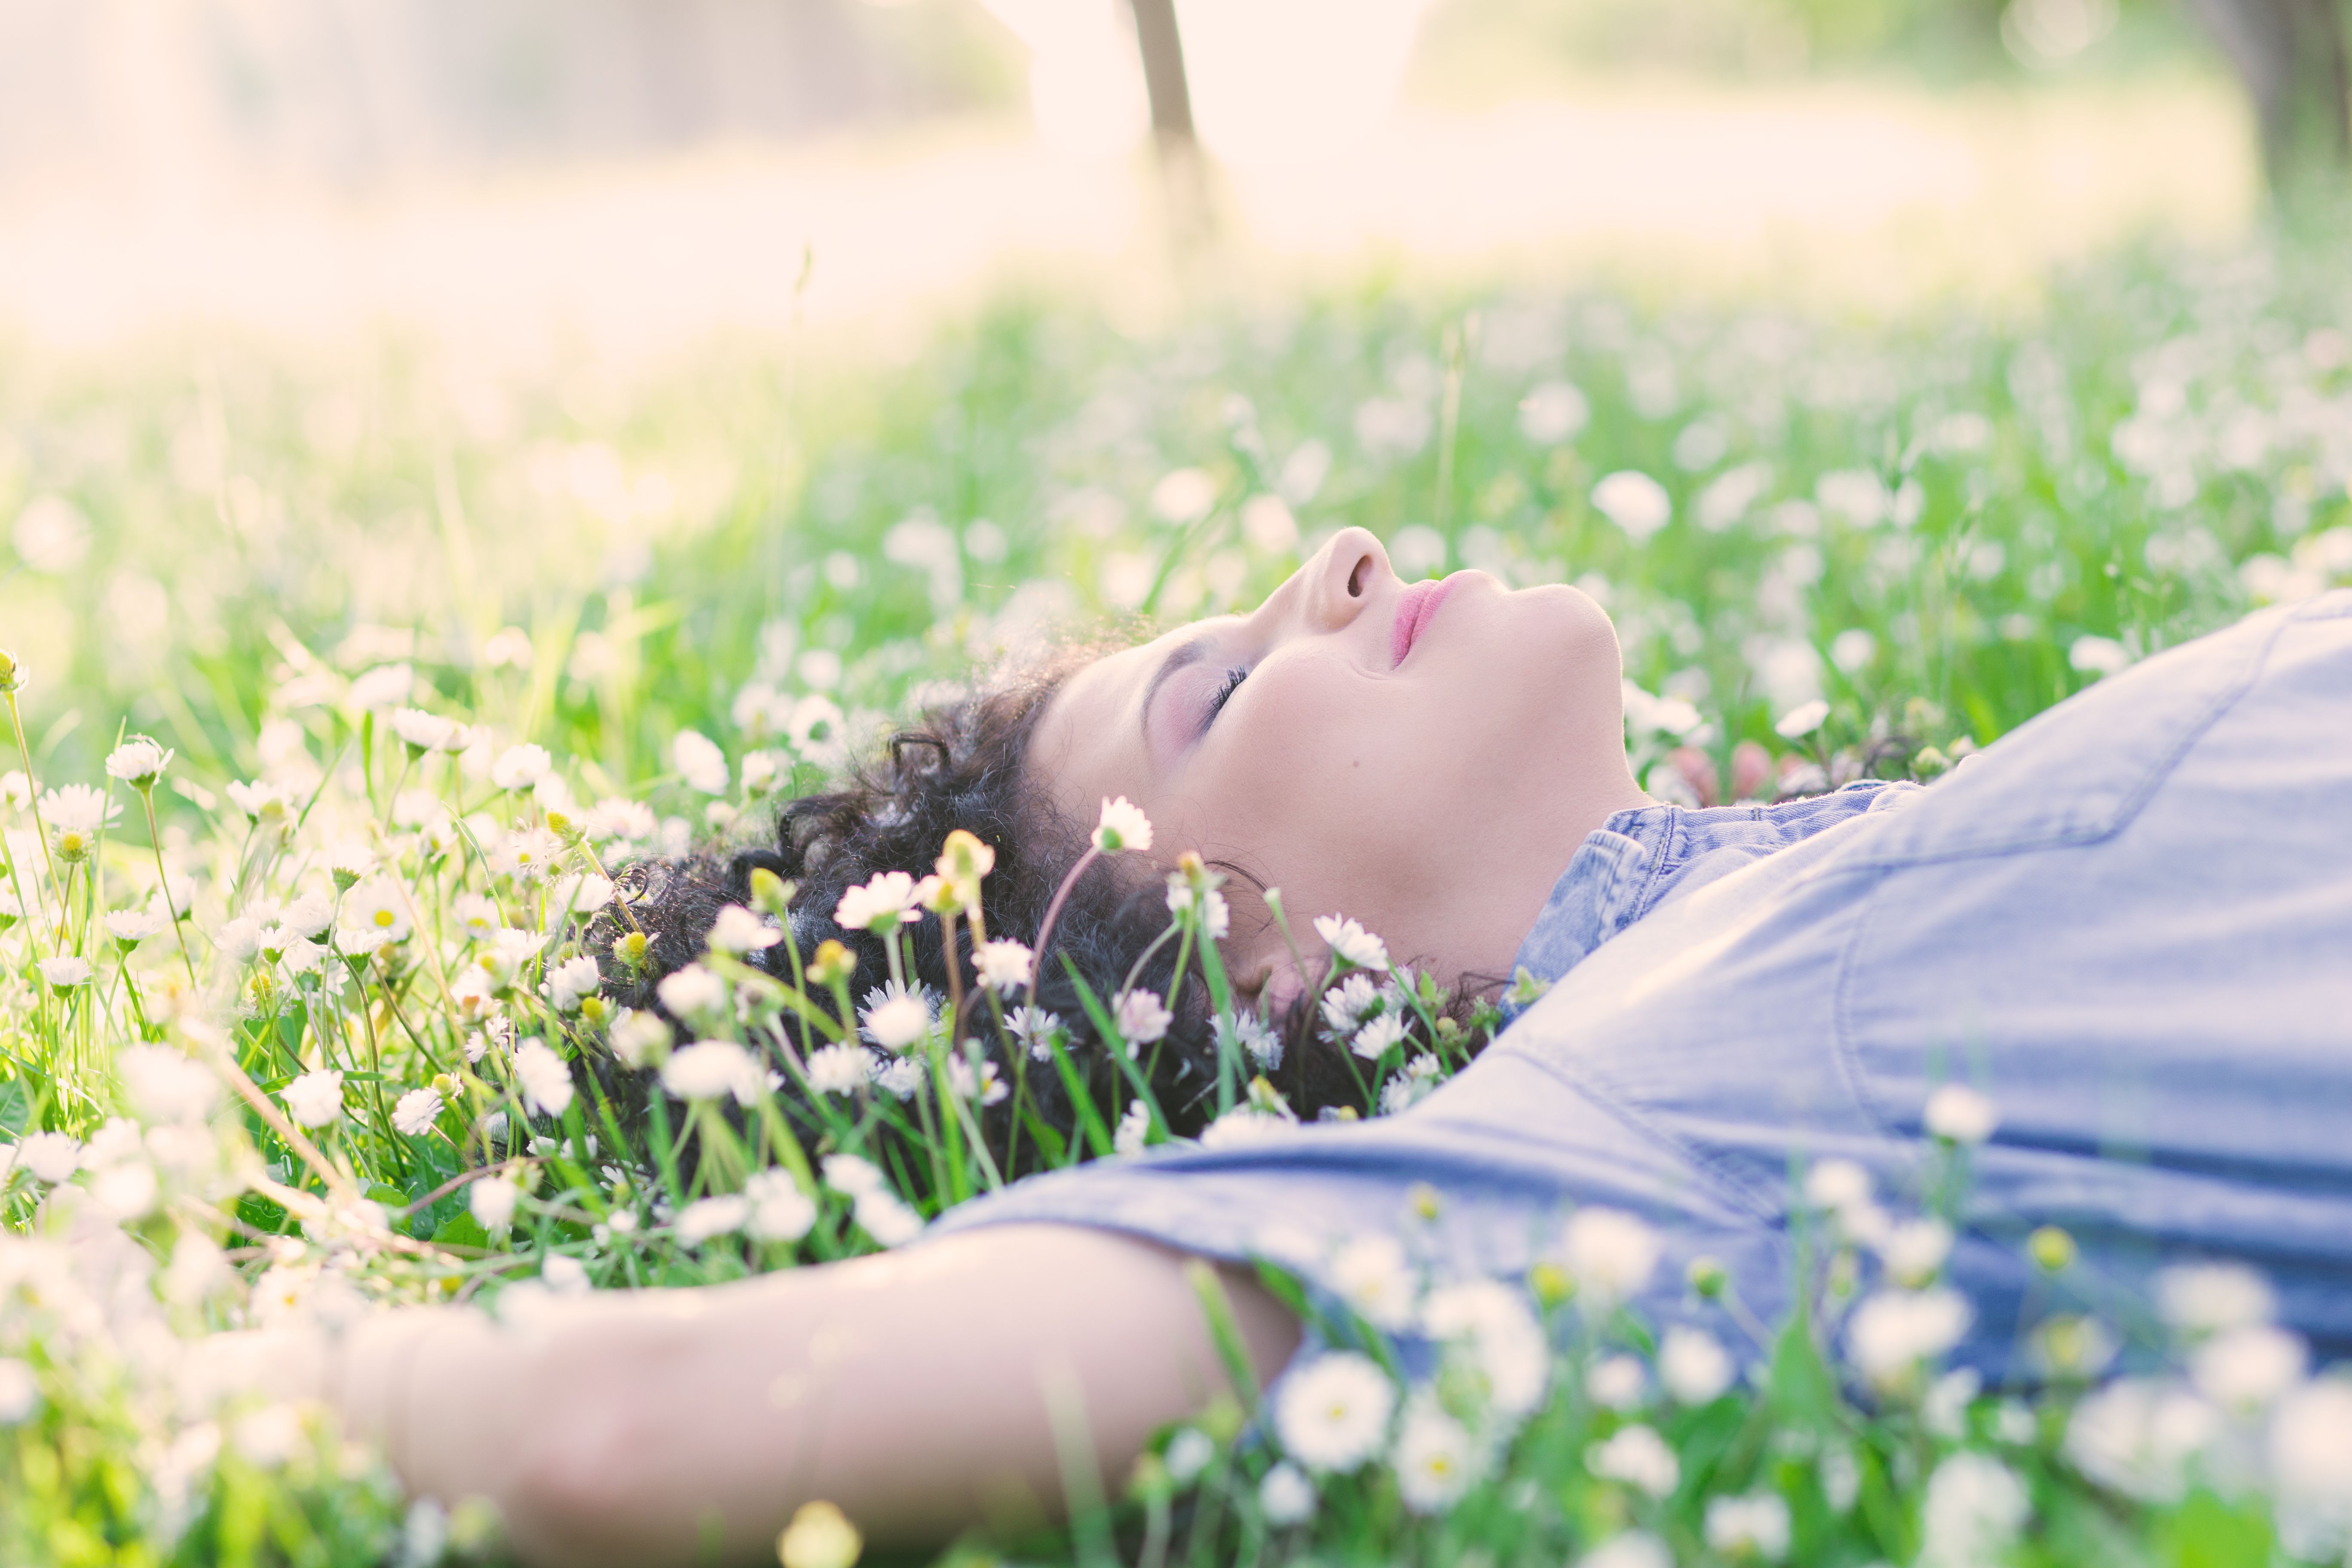 Woman sleeping in a flower-strewn meadow.